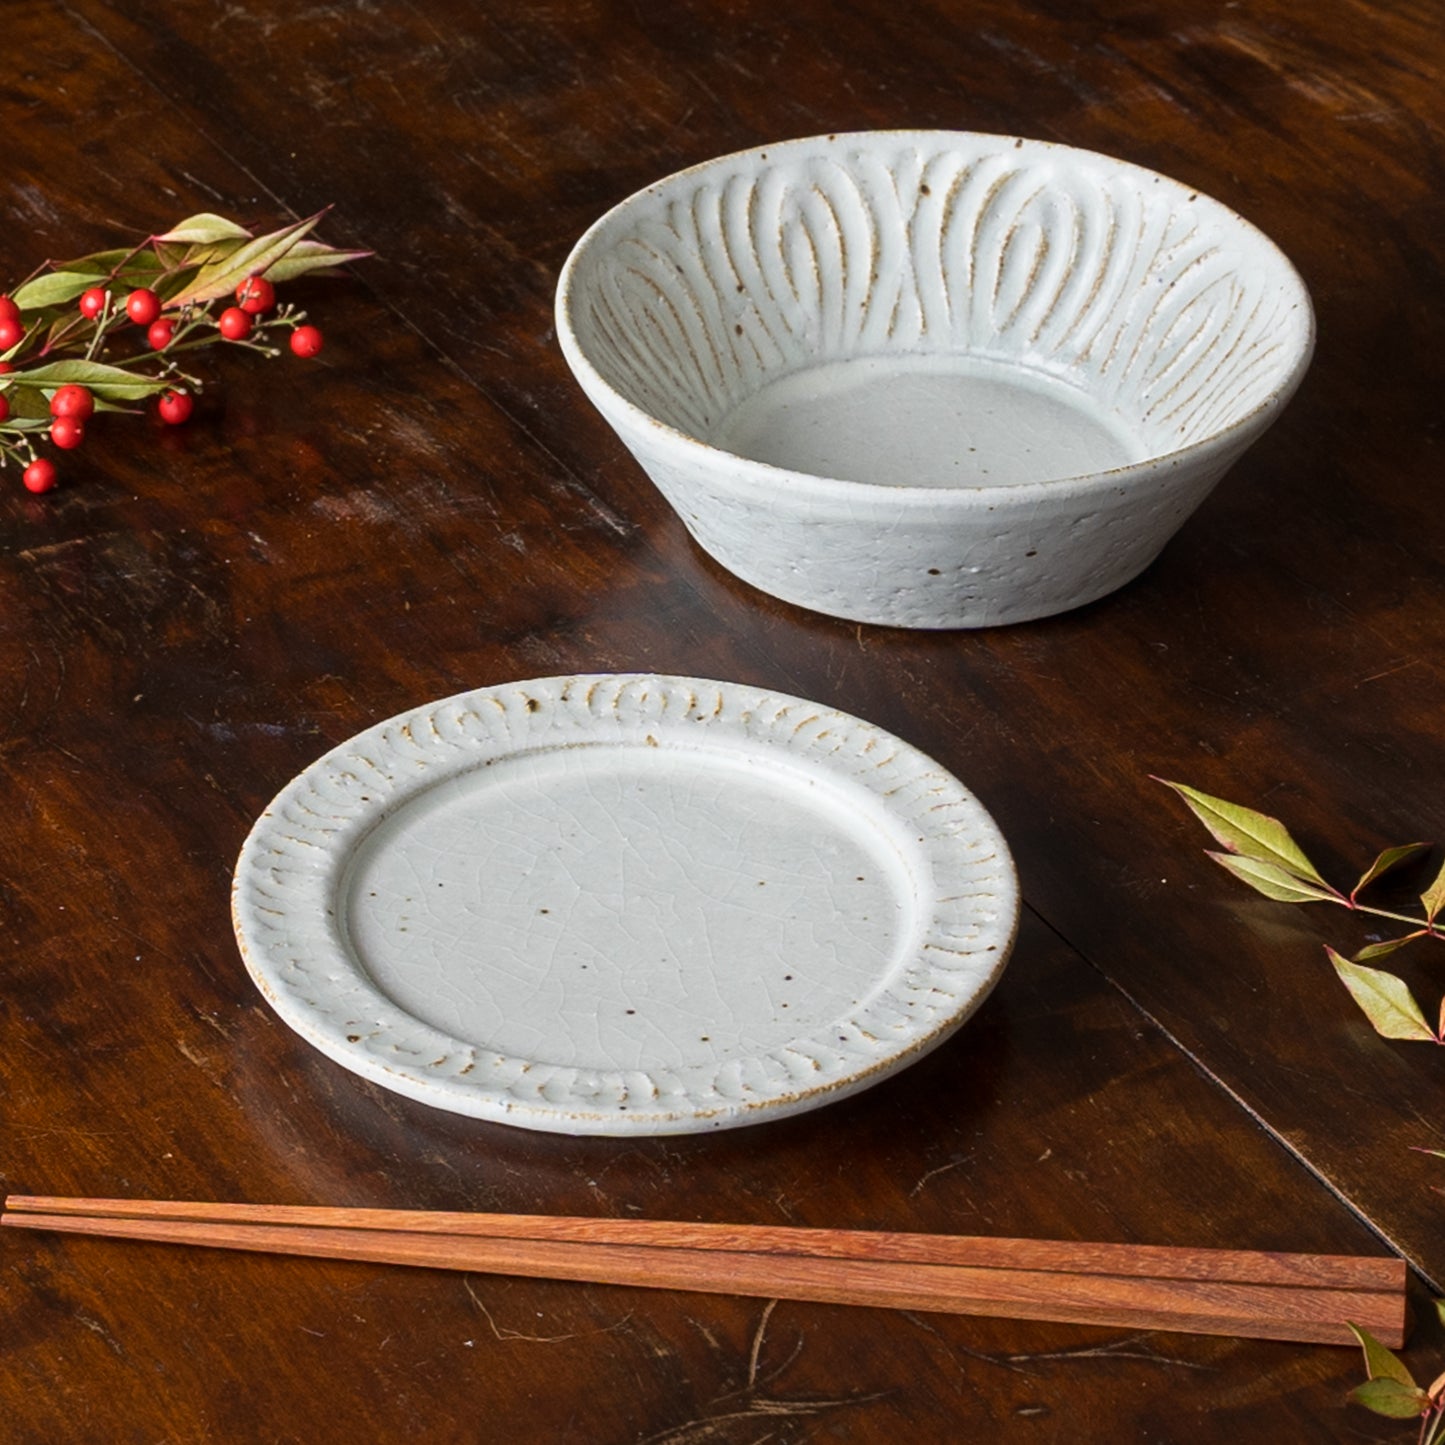 お料理の取り皿にぴったり合う伊藤豊さんの粉引き花紋プレートと切立ボウル